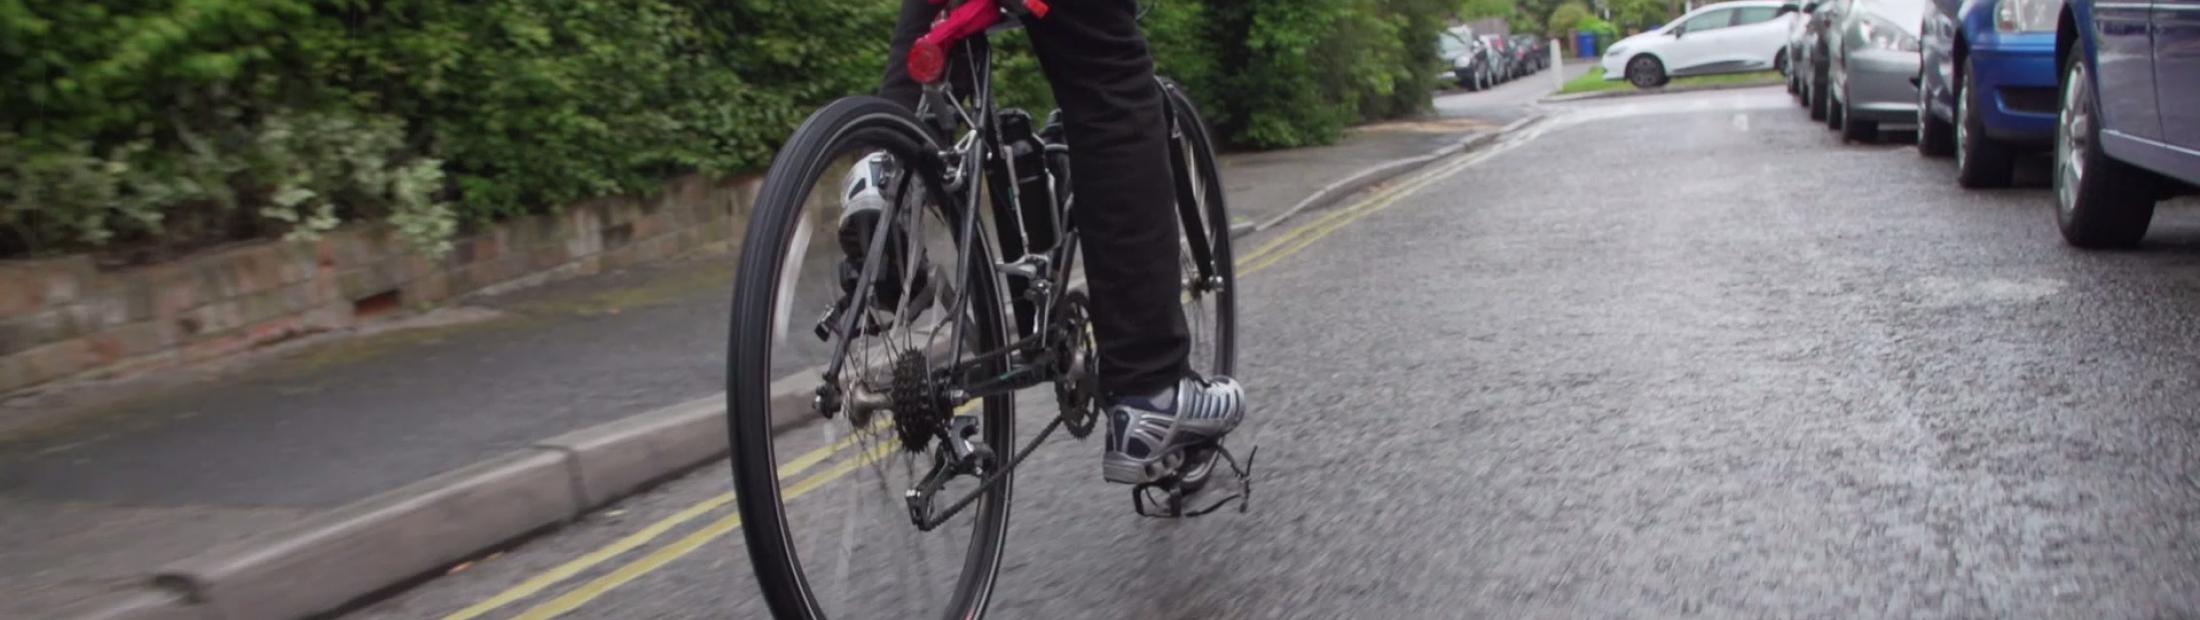 Refugiados en bicicleta: un proyecto solidario en Londres